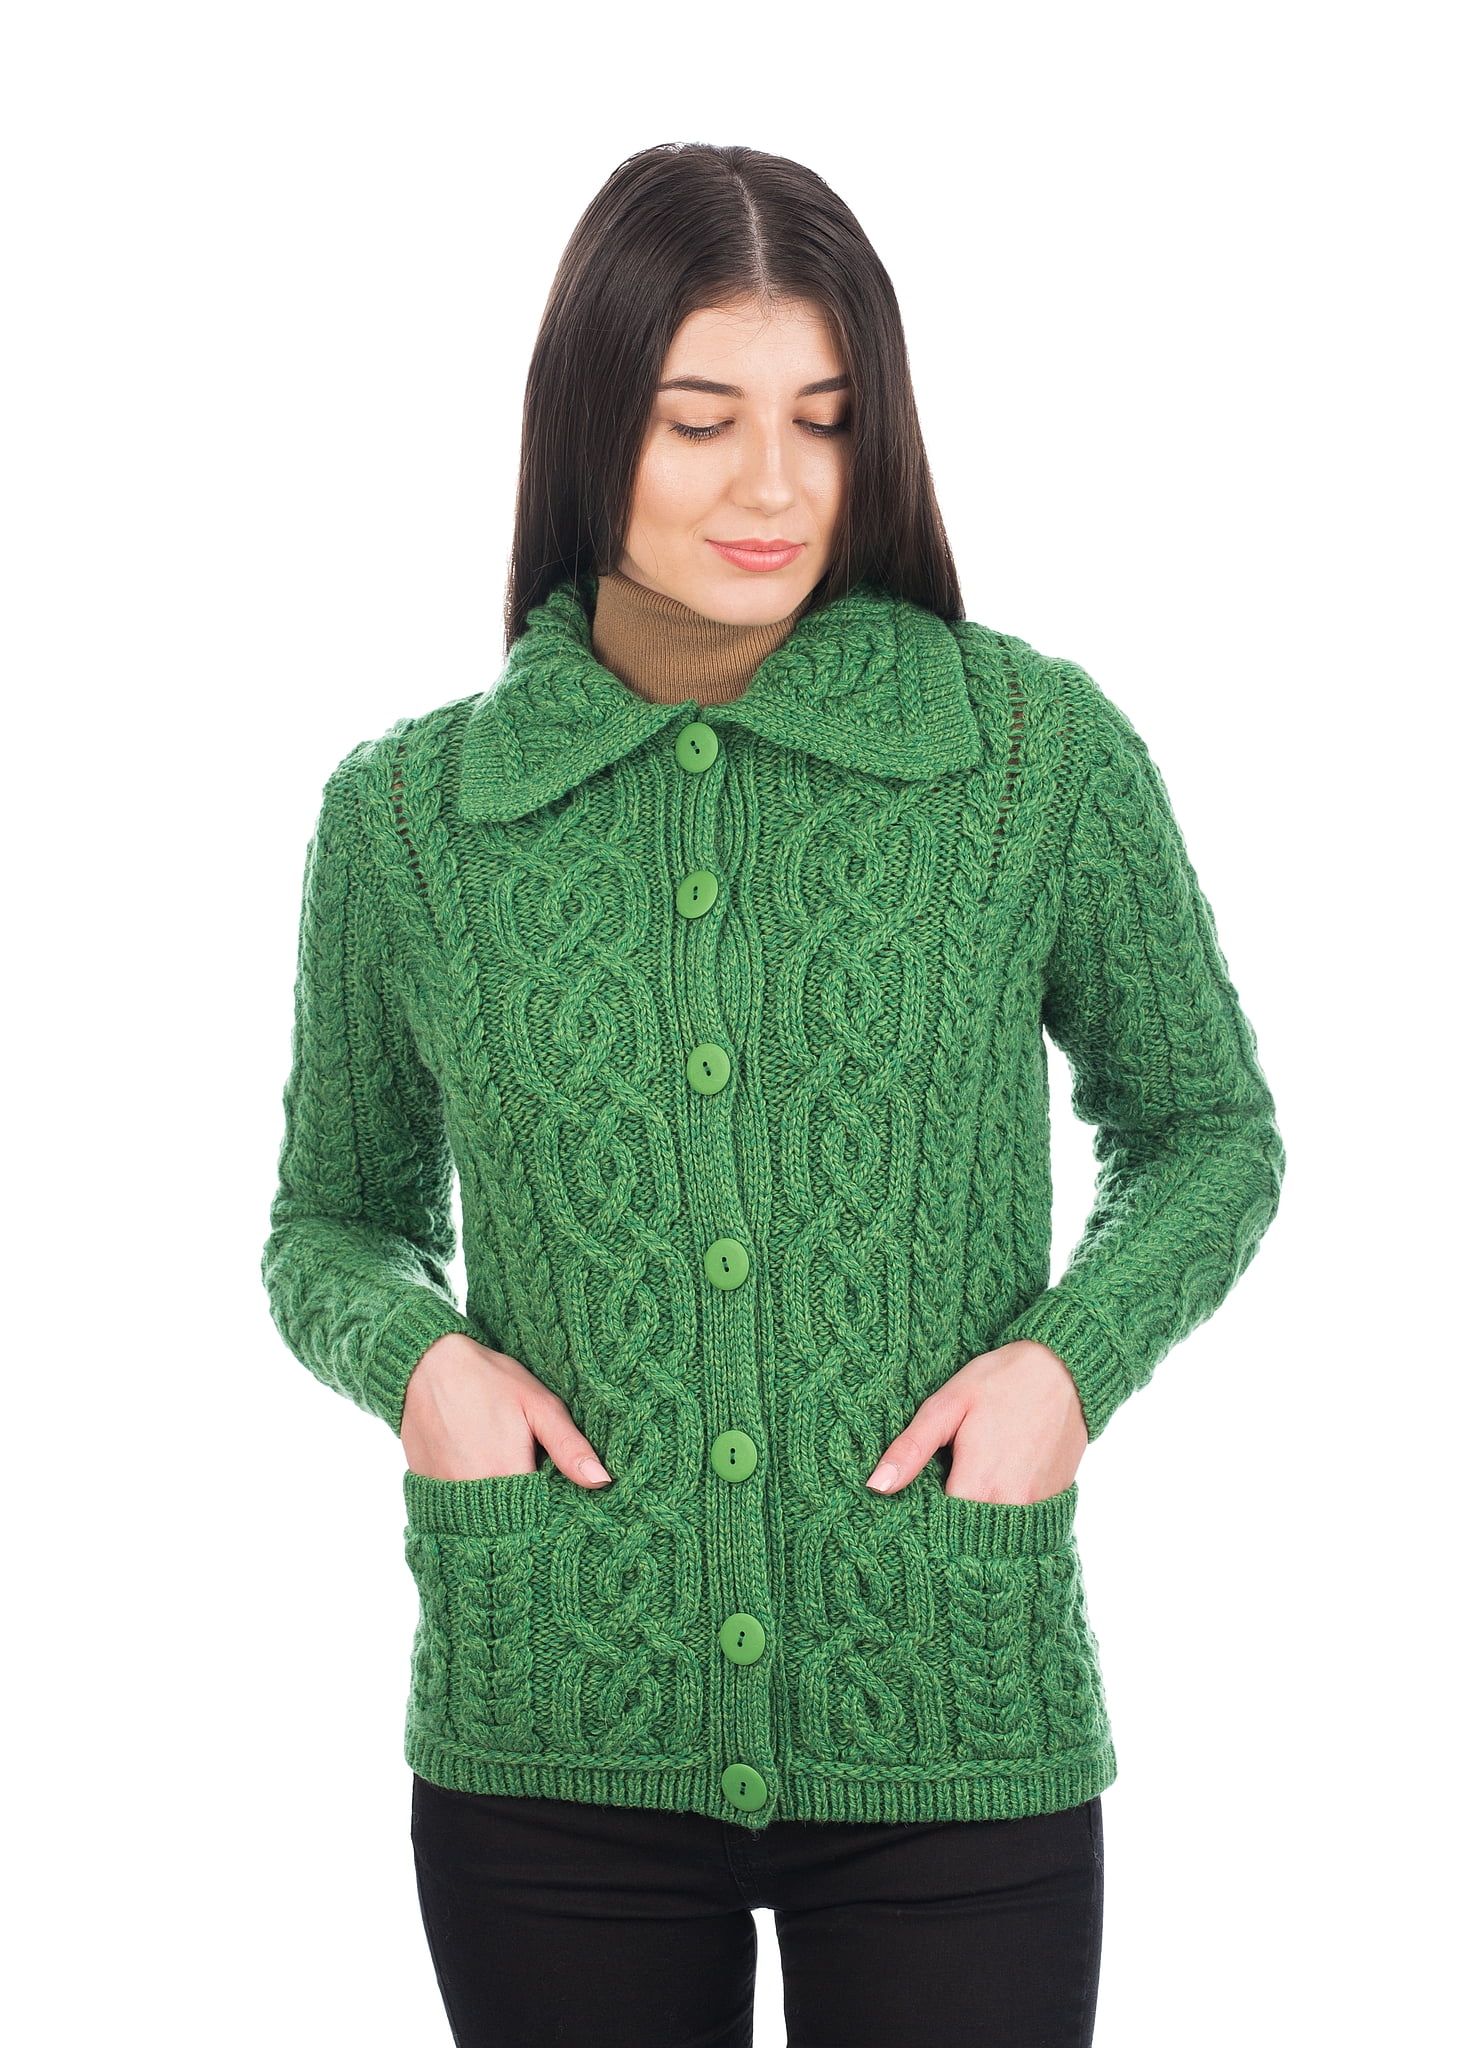 SAOL - Irish Cardigan Sweater for Women 100% Merino Wool Aran Knit